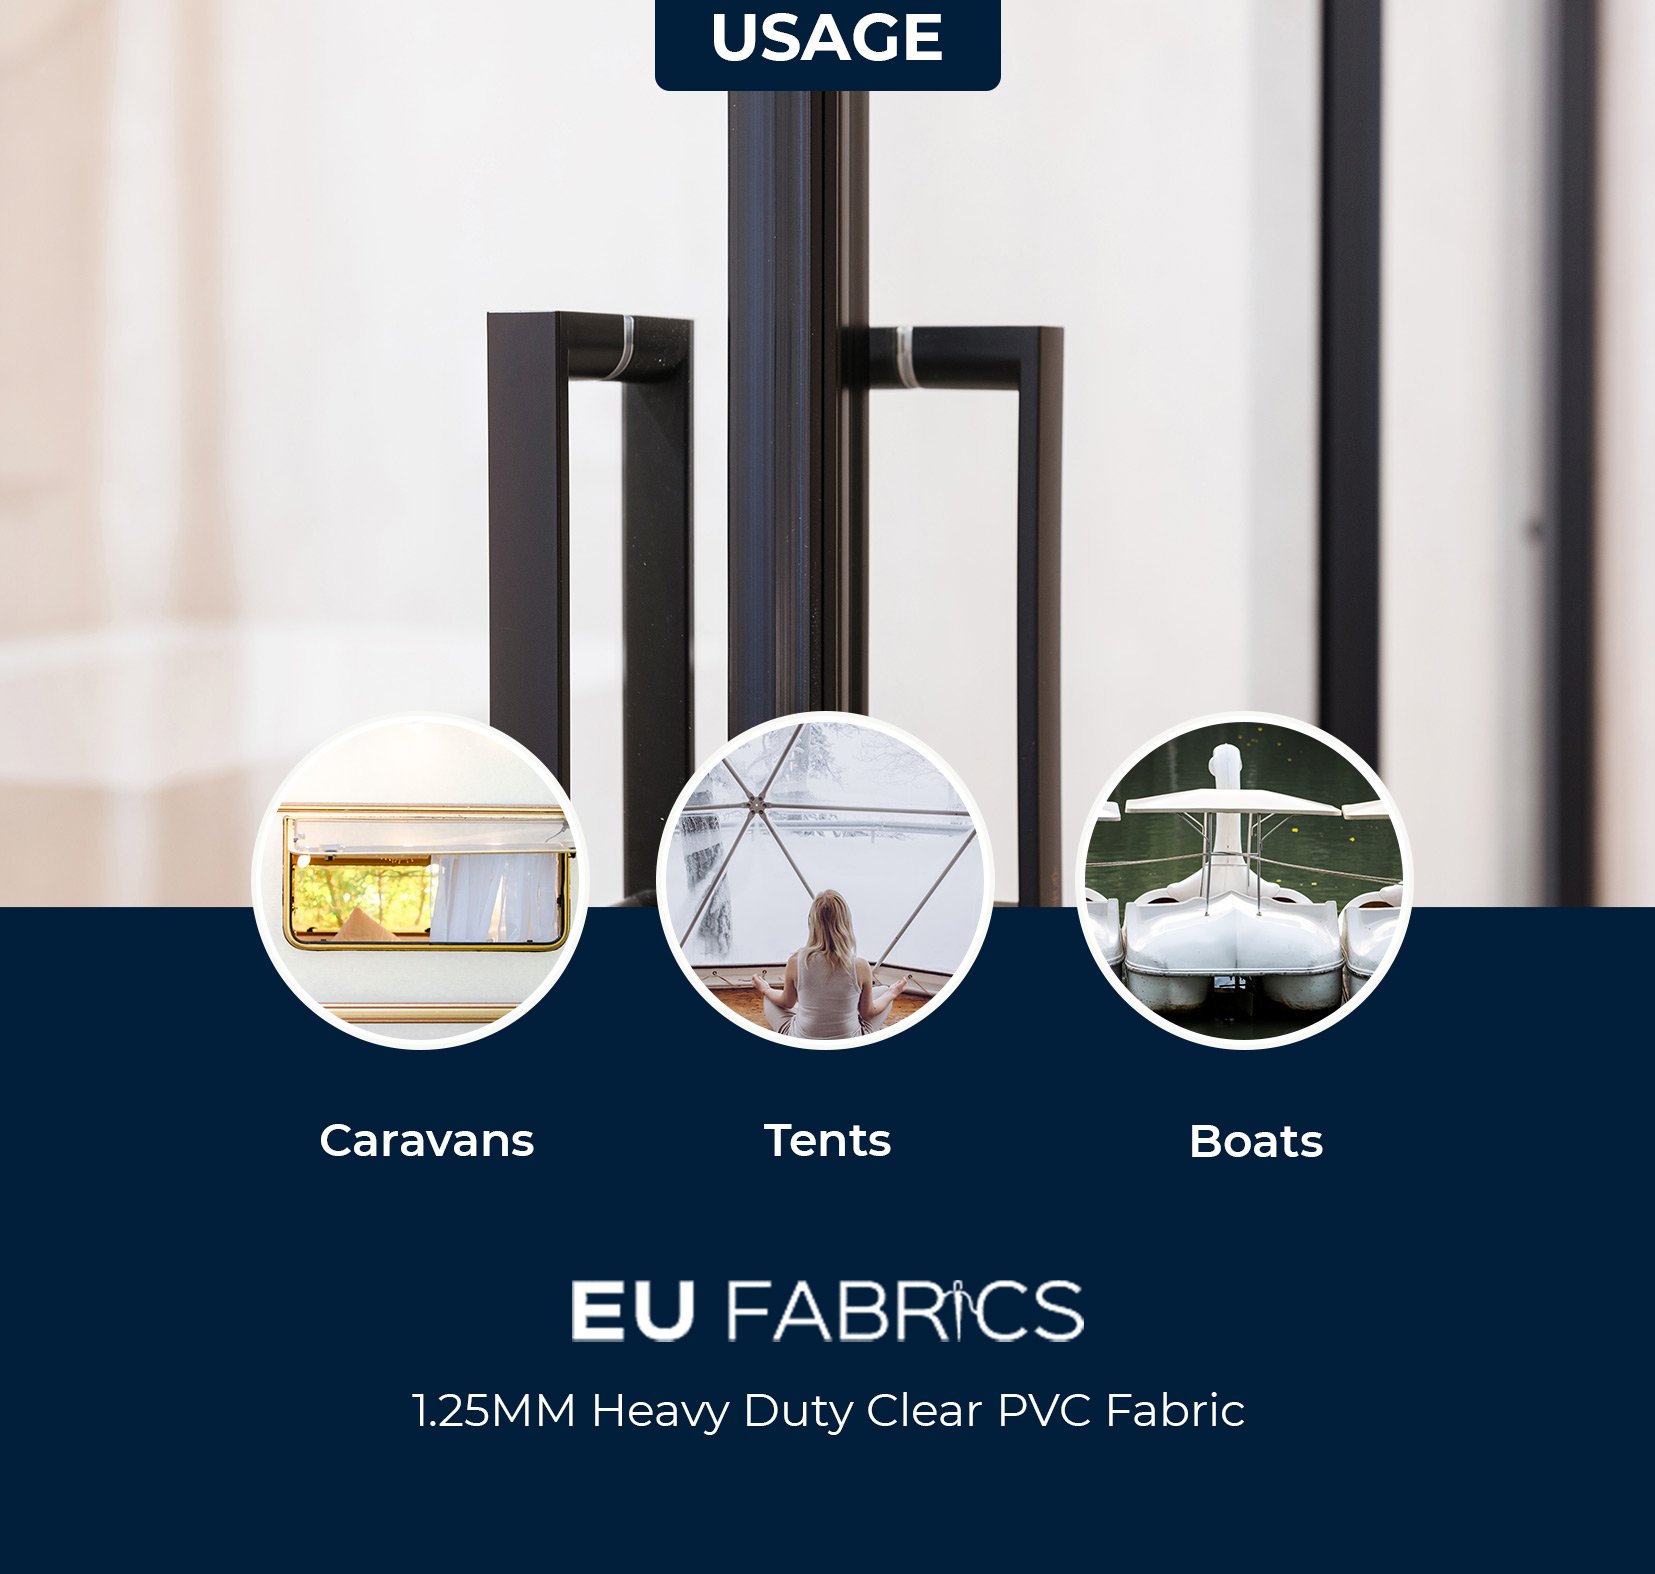 1.25MM Heavy Duty Clear PVC Fabric Usage